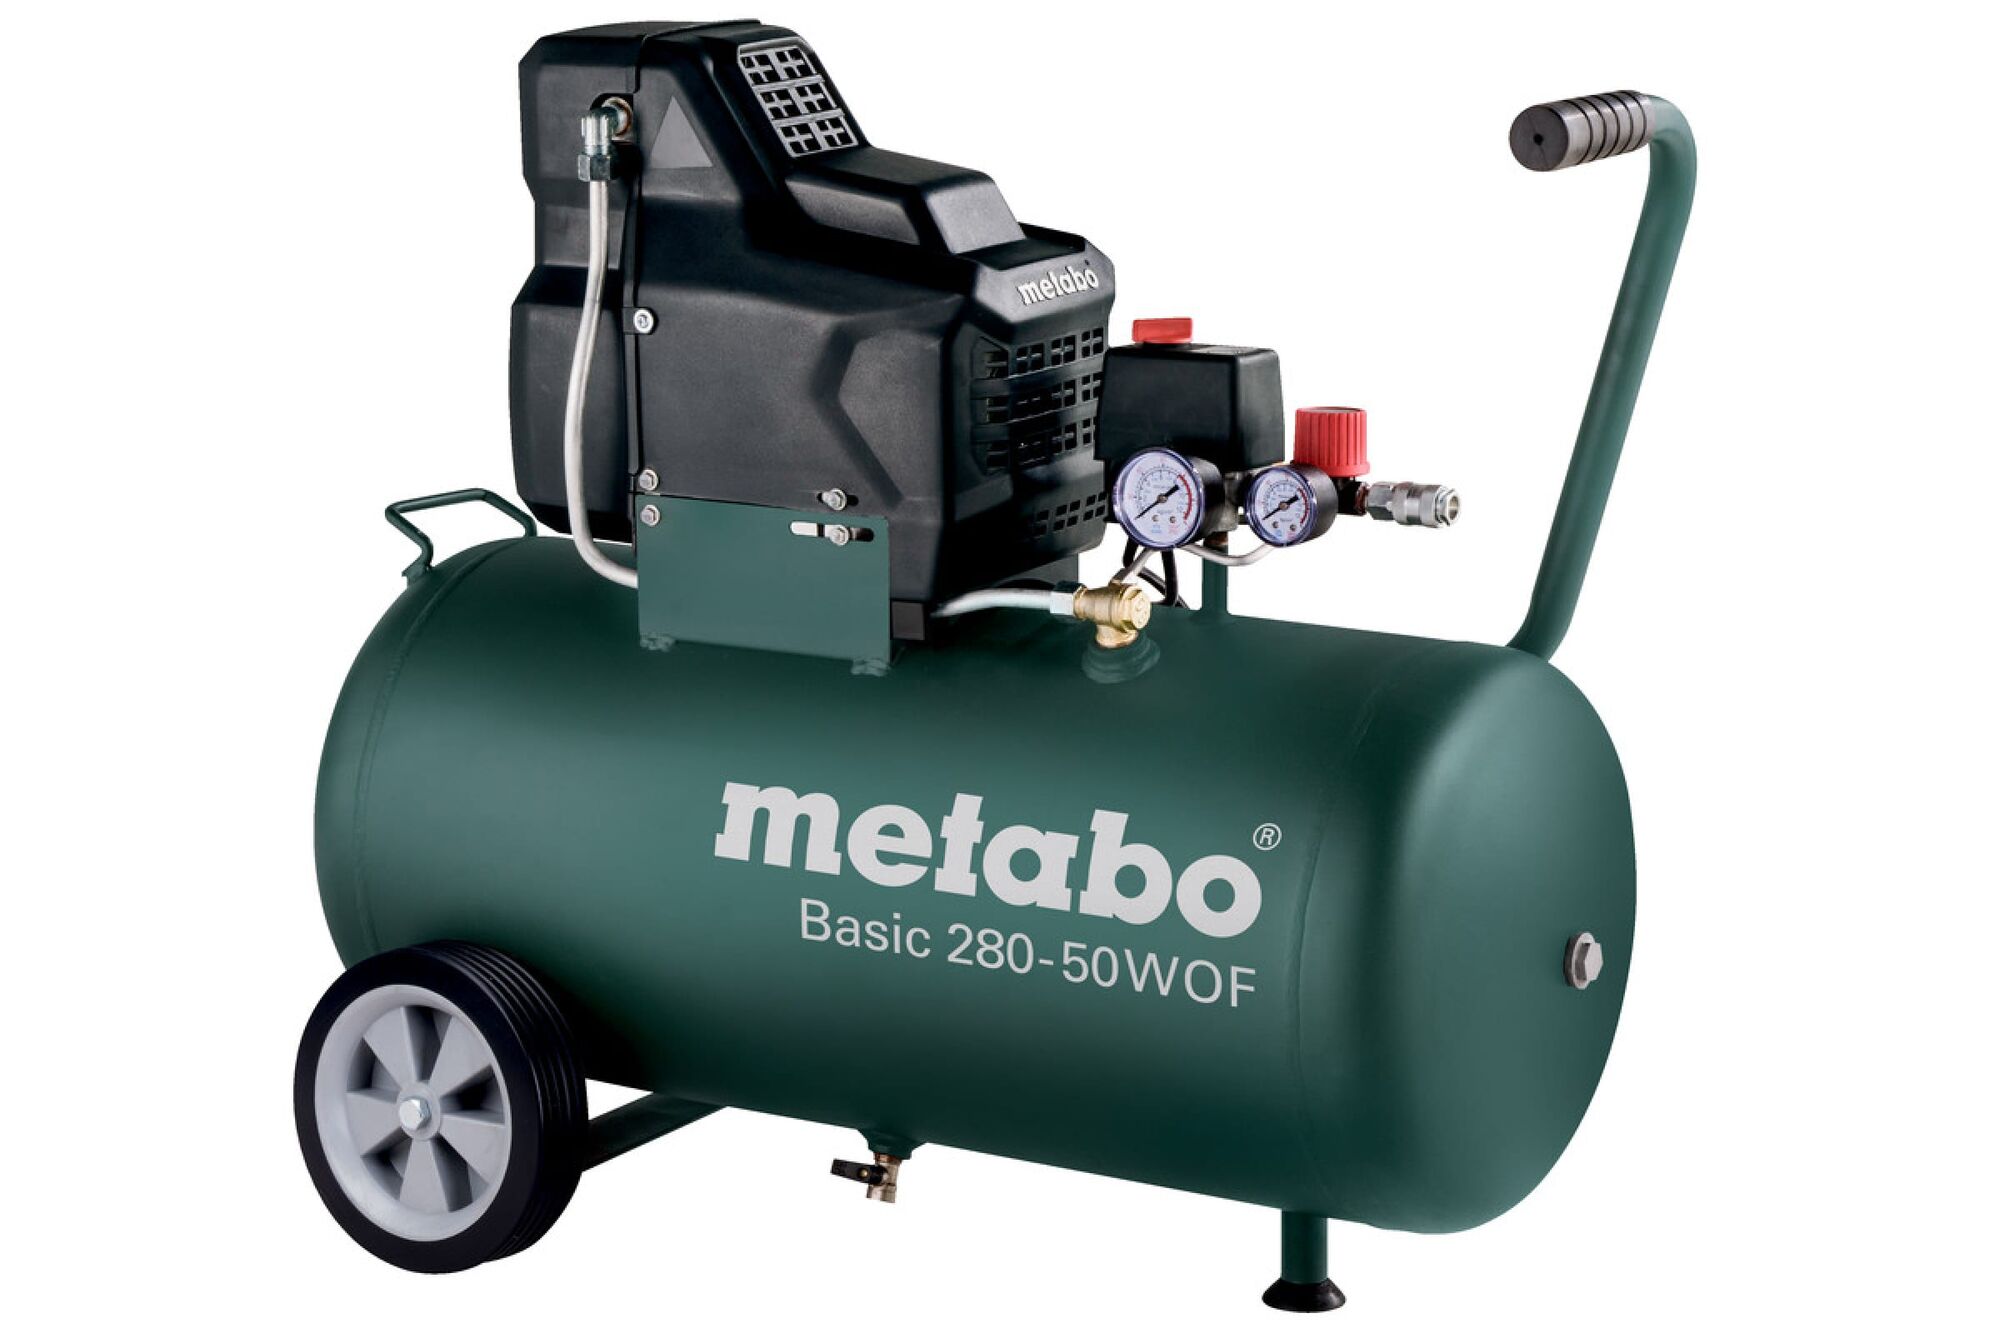 Купить компрессор в рязани. Metabo Basic 250-50 w. Компрессор Метабо 250-50w. Metabo компрессор Basic 250-50 w of 601535000. Компрессор Metabo Basic 250-50.